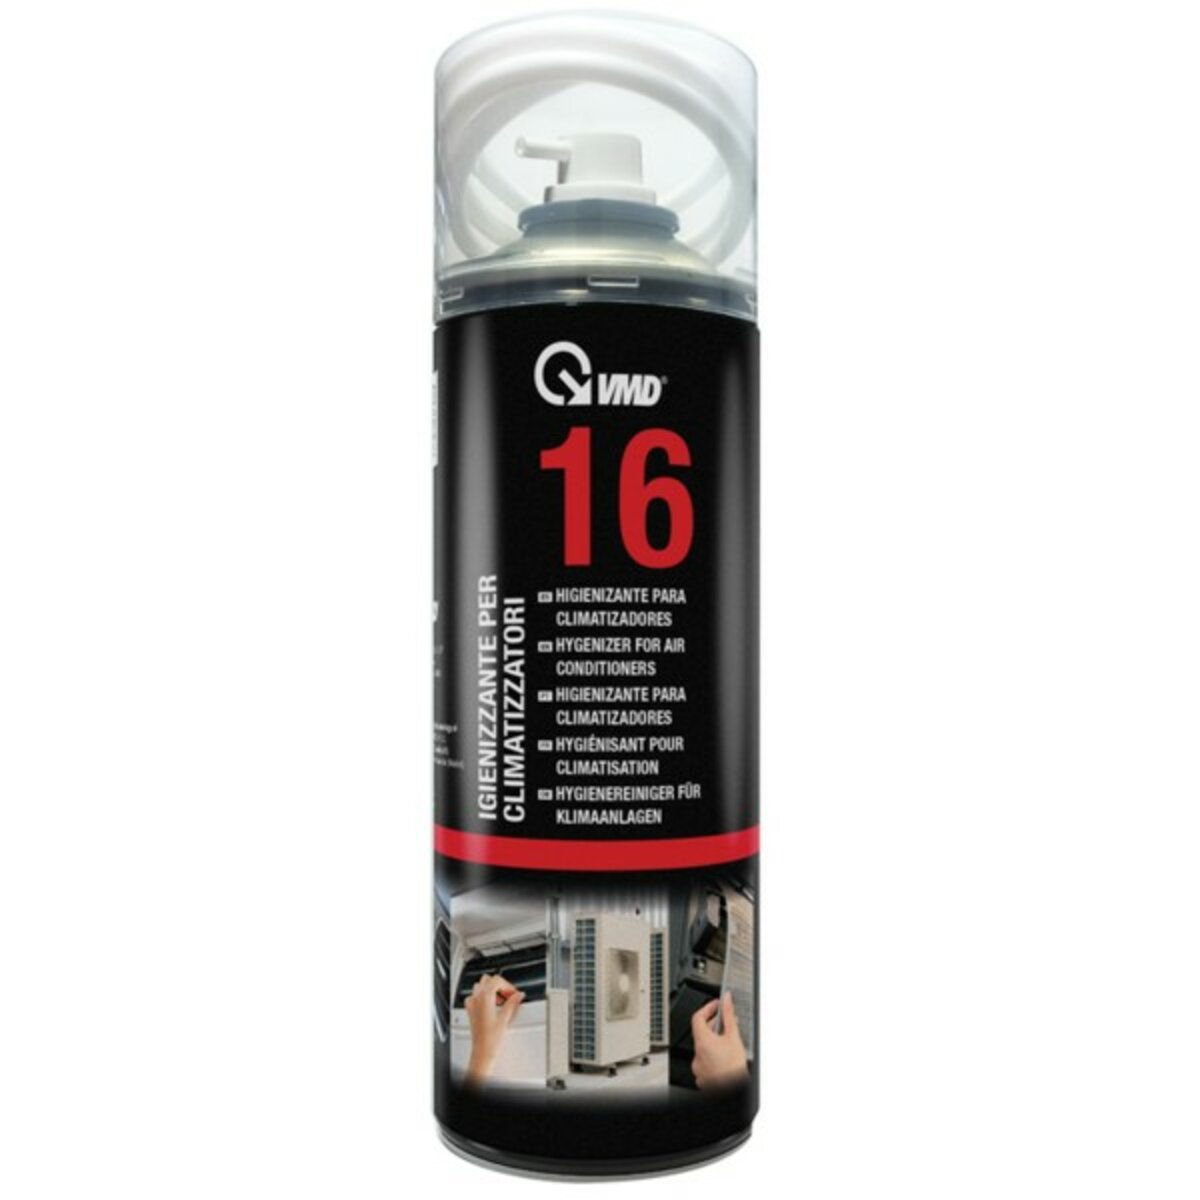 Spray désinfectant VMD 16 pour climatiseurs à usage civil et pour climatiseurs de voiture